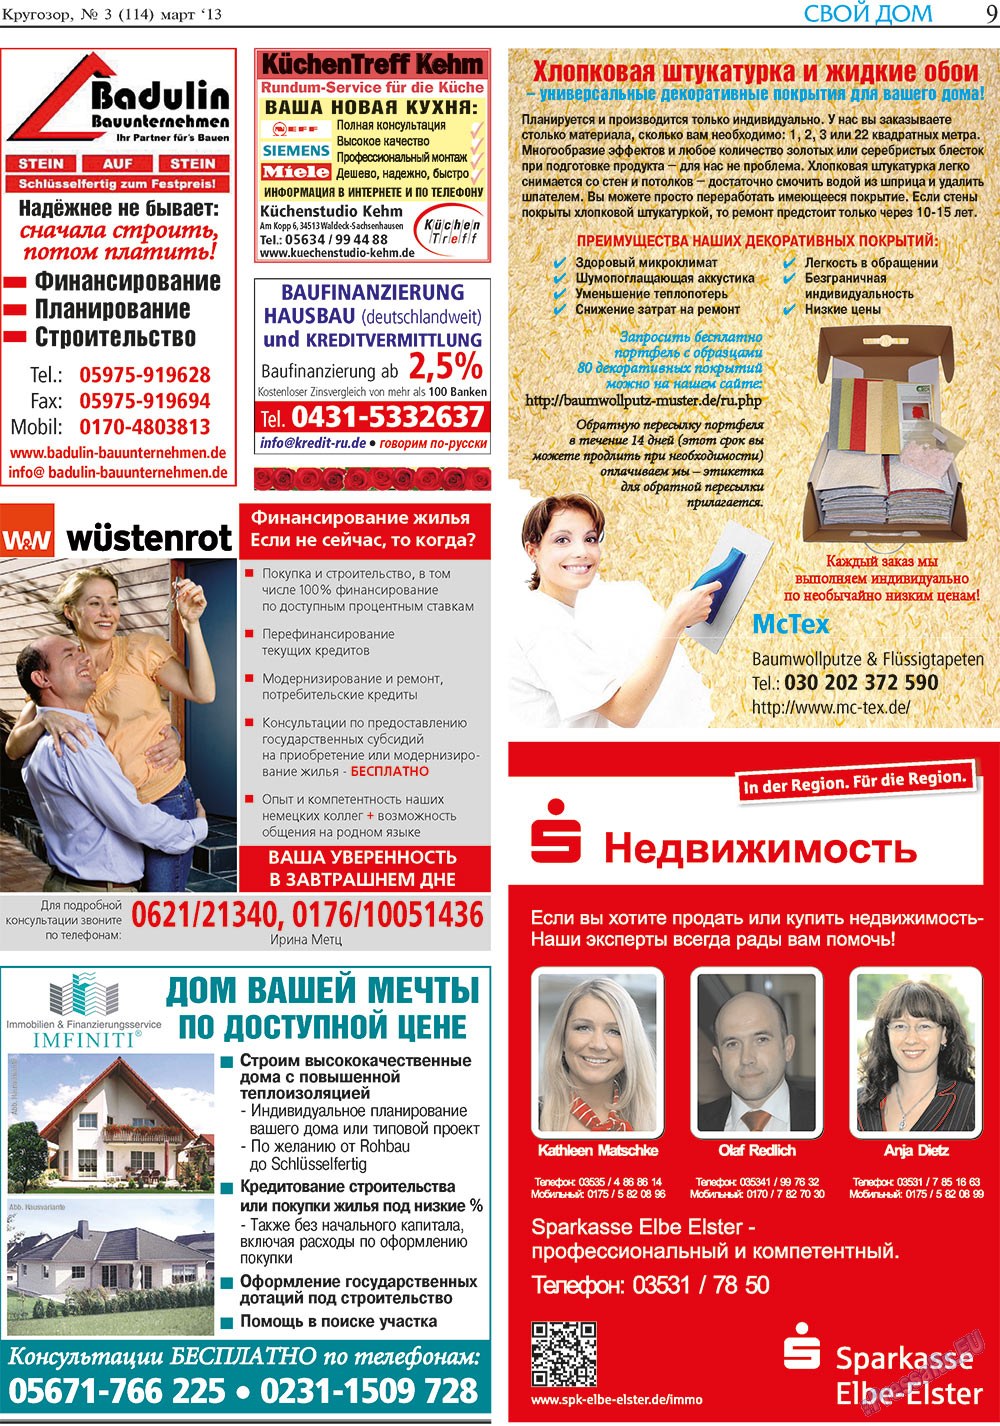 Кругозор, газета. 2013 №3 стр.9